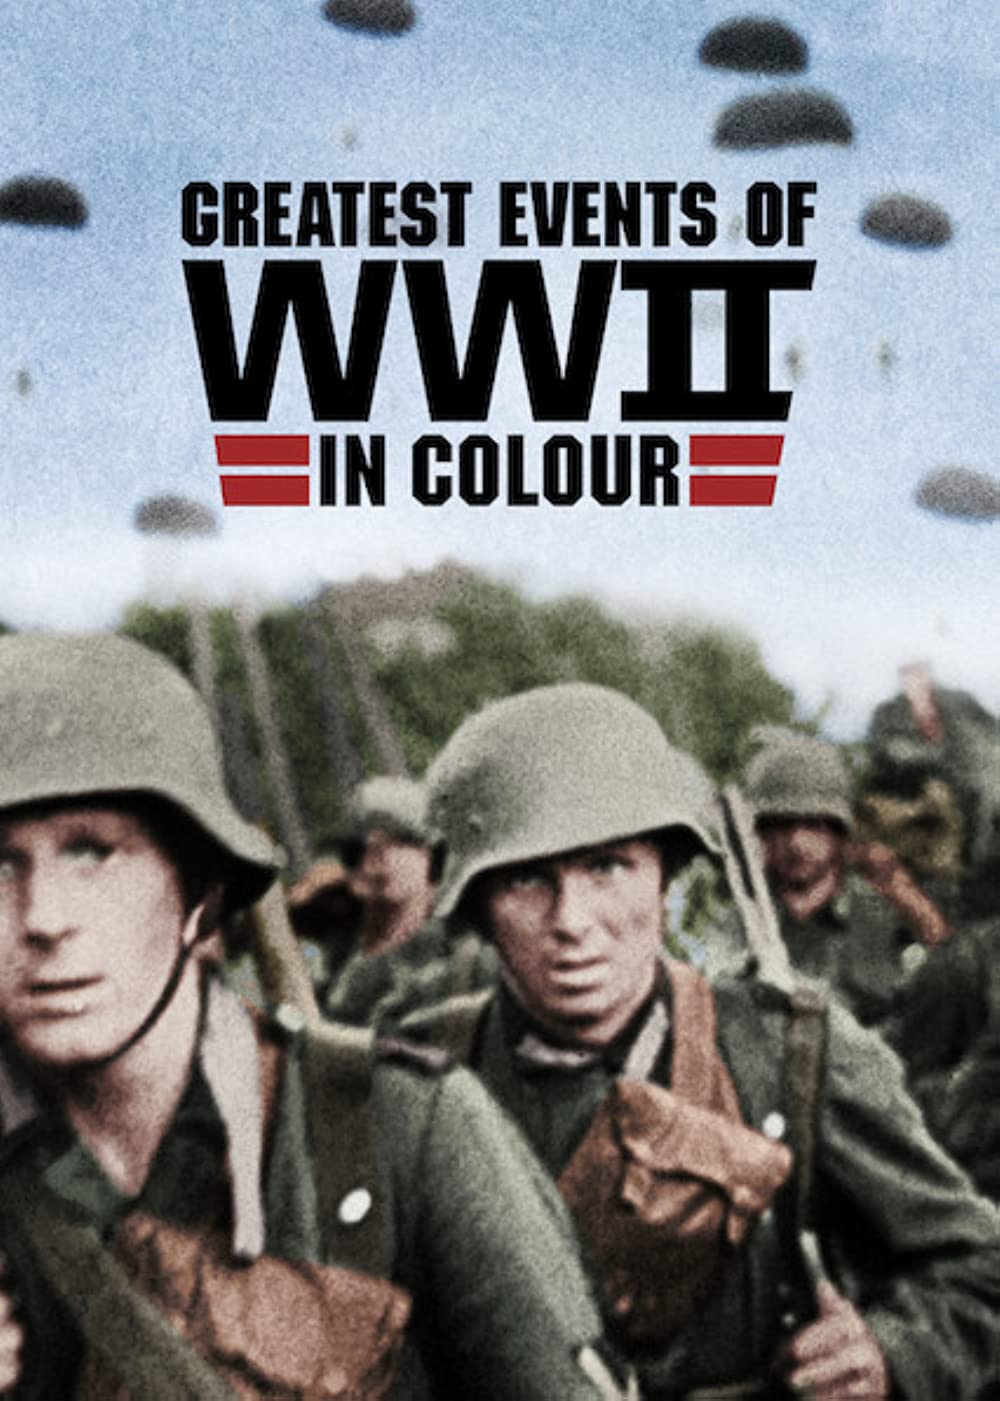 ดูหนังออนไลน์ฟรี Greatest Events of WWII in Colour (2019) EP.5 ภาพสีประวัติศาสตร์ของเหตุการณ์สำคัญช่วงสงครามโลกครั้งที่ 2 ตอนที่ 5 [ ซับไทย ]